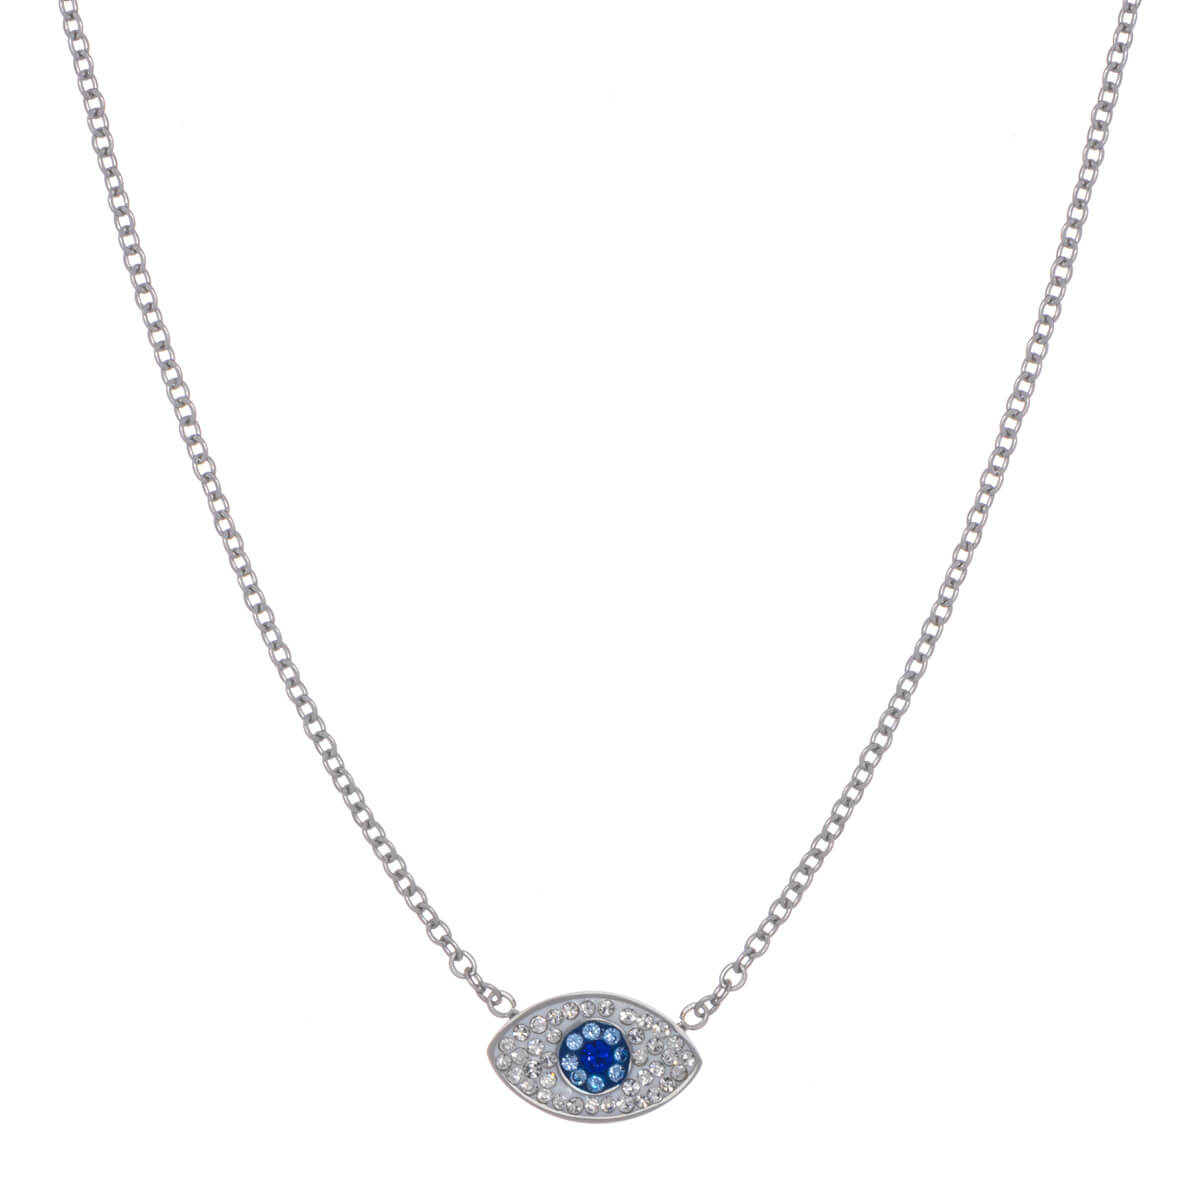 Sparkling evil eye pendant necklace 42cm (steel 316L)